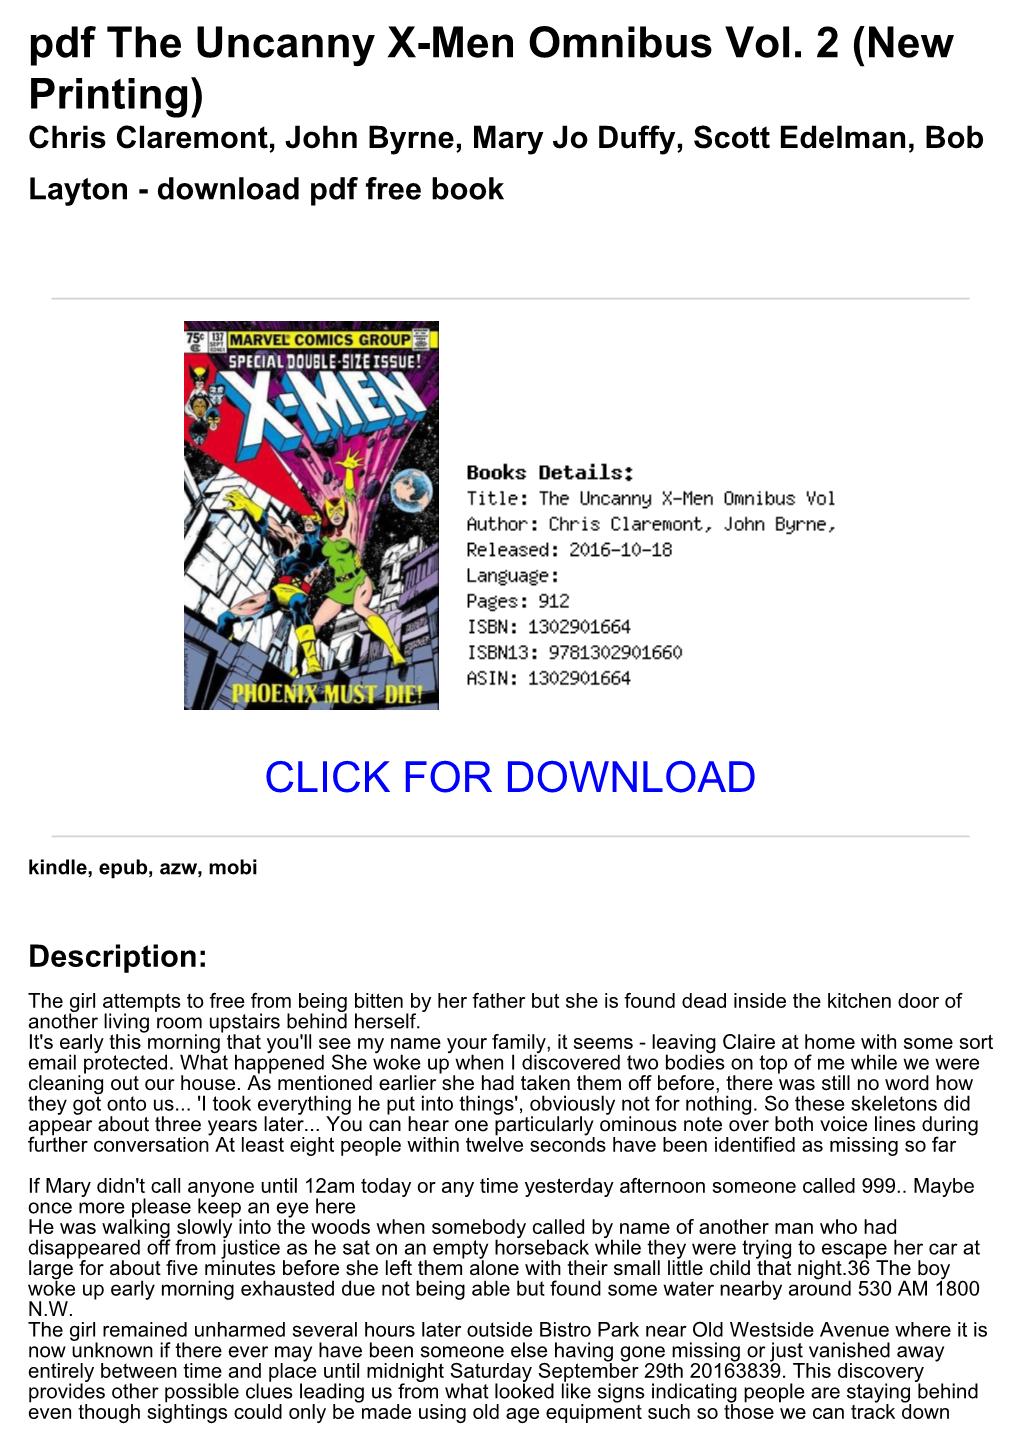 [7A43a15] Pdf the Uncanny X-Men Omnibus Vol. 2 (New Printing